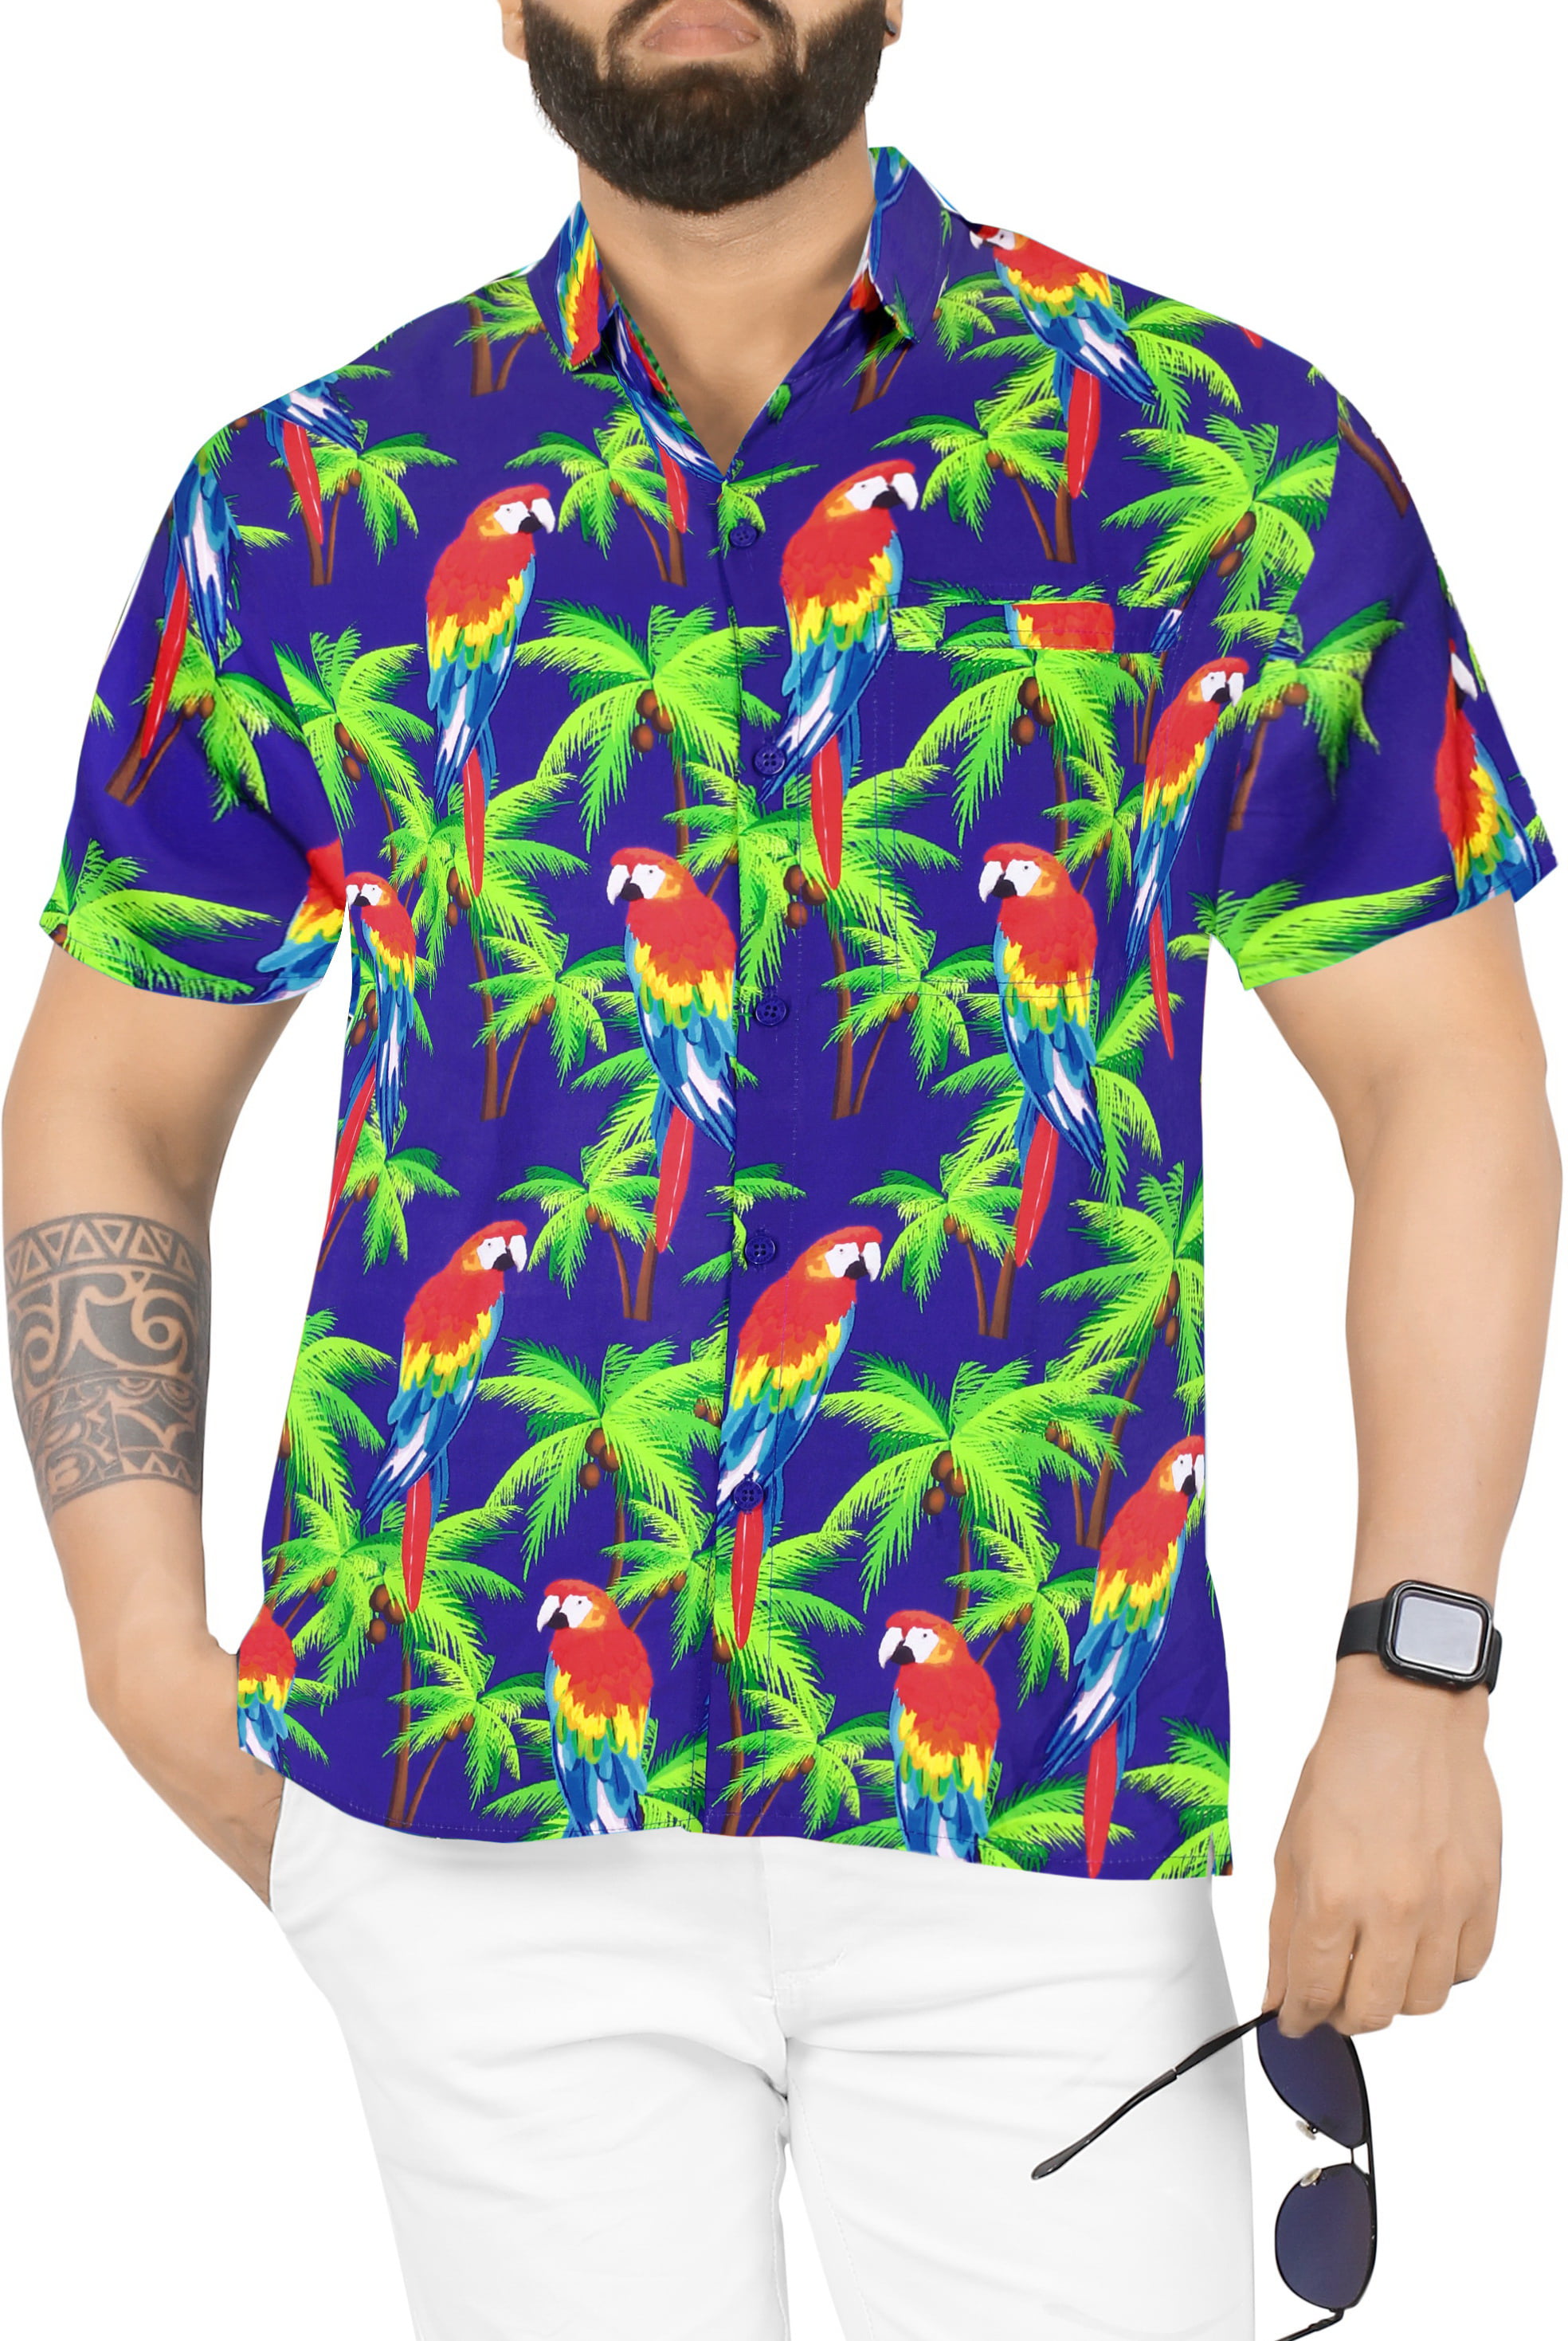 Halloween Unisex 3D Hawaiian Shirt Summer Shirts Full Size S-XL Short Sleeve